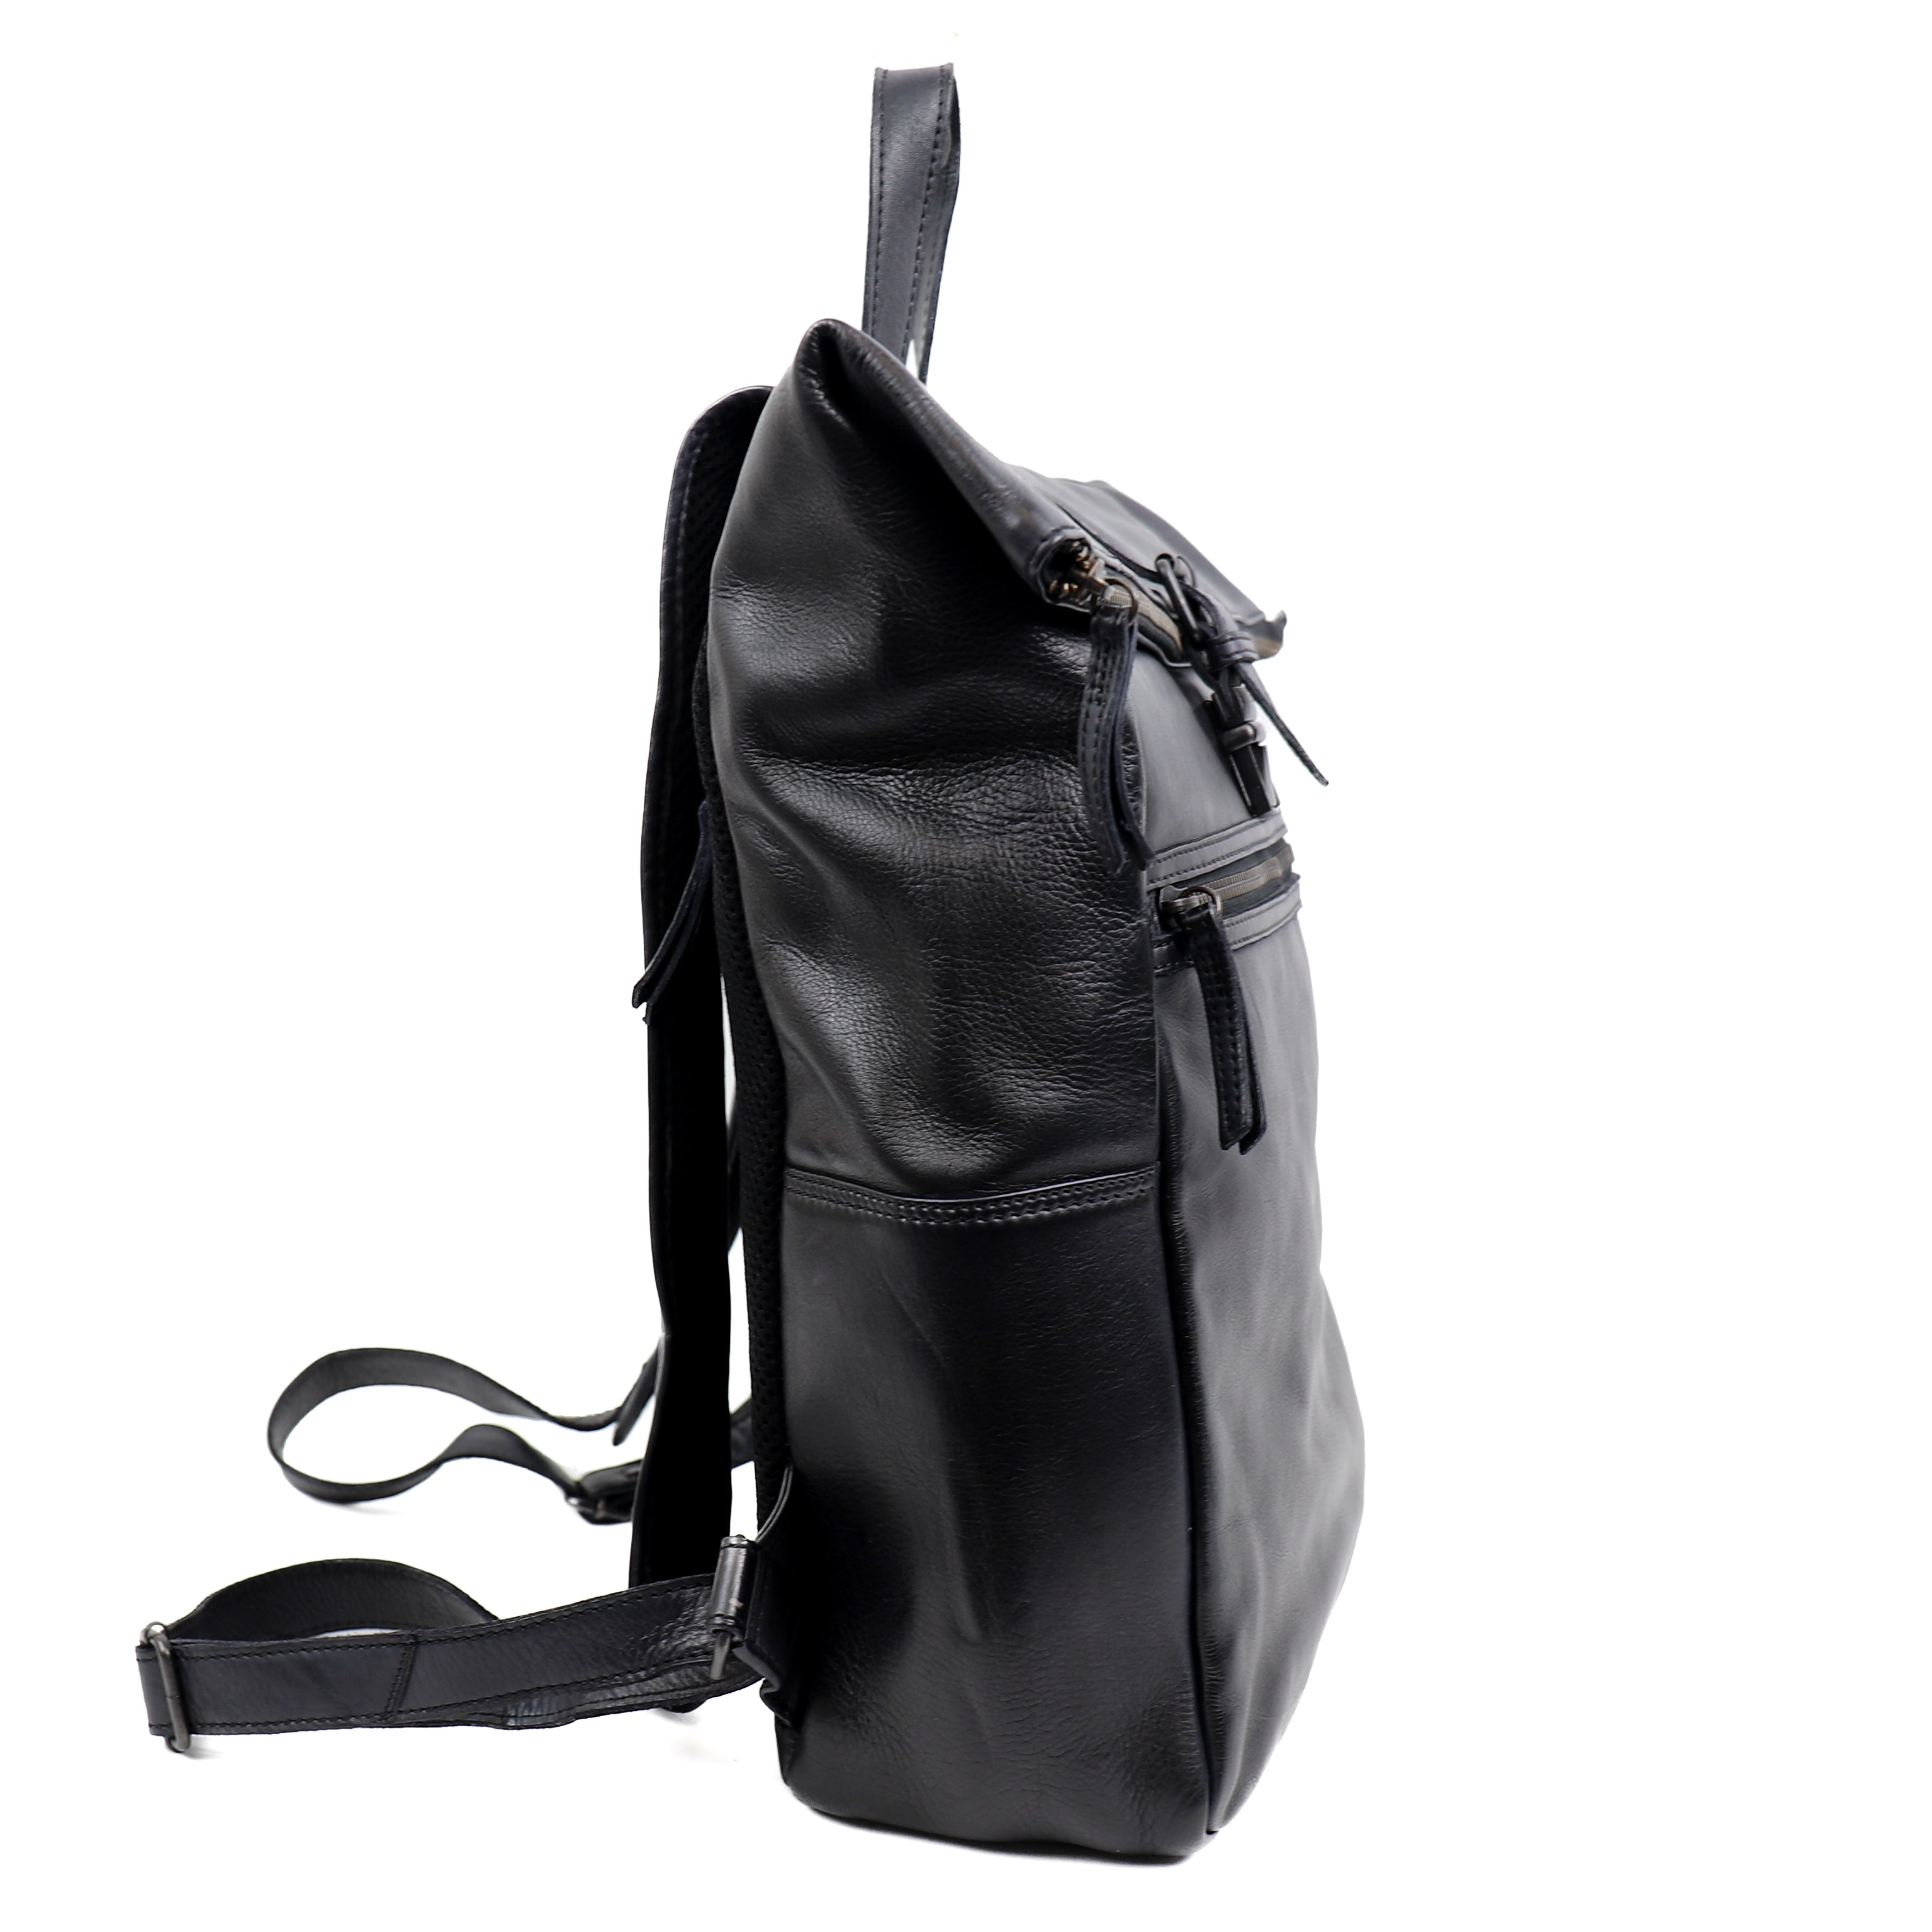 Backpack 'Rick' black - CL 40007